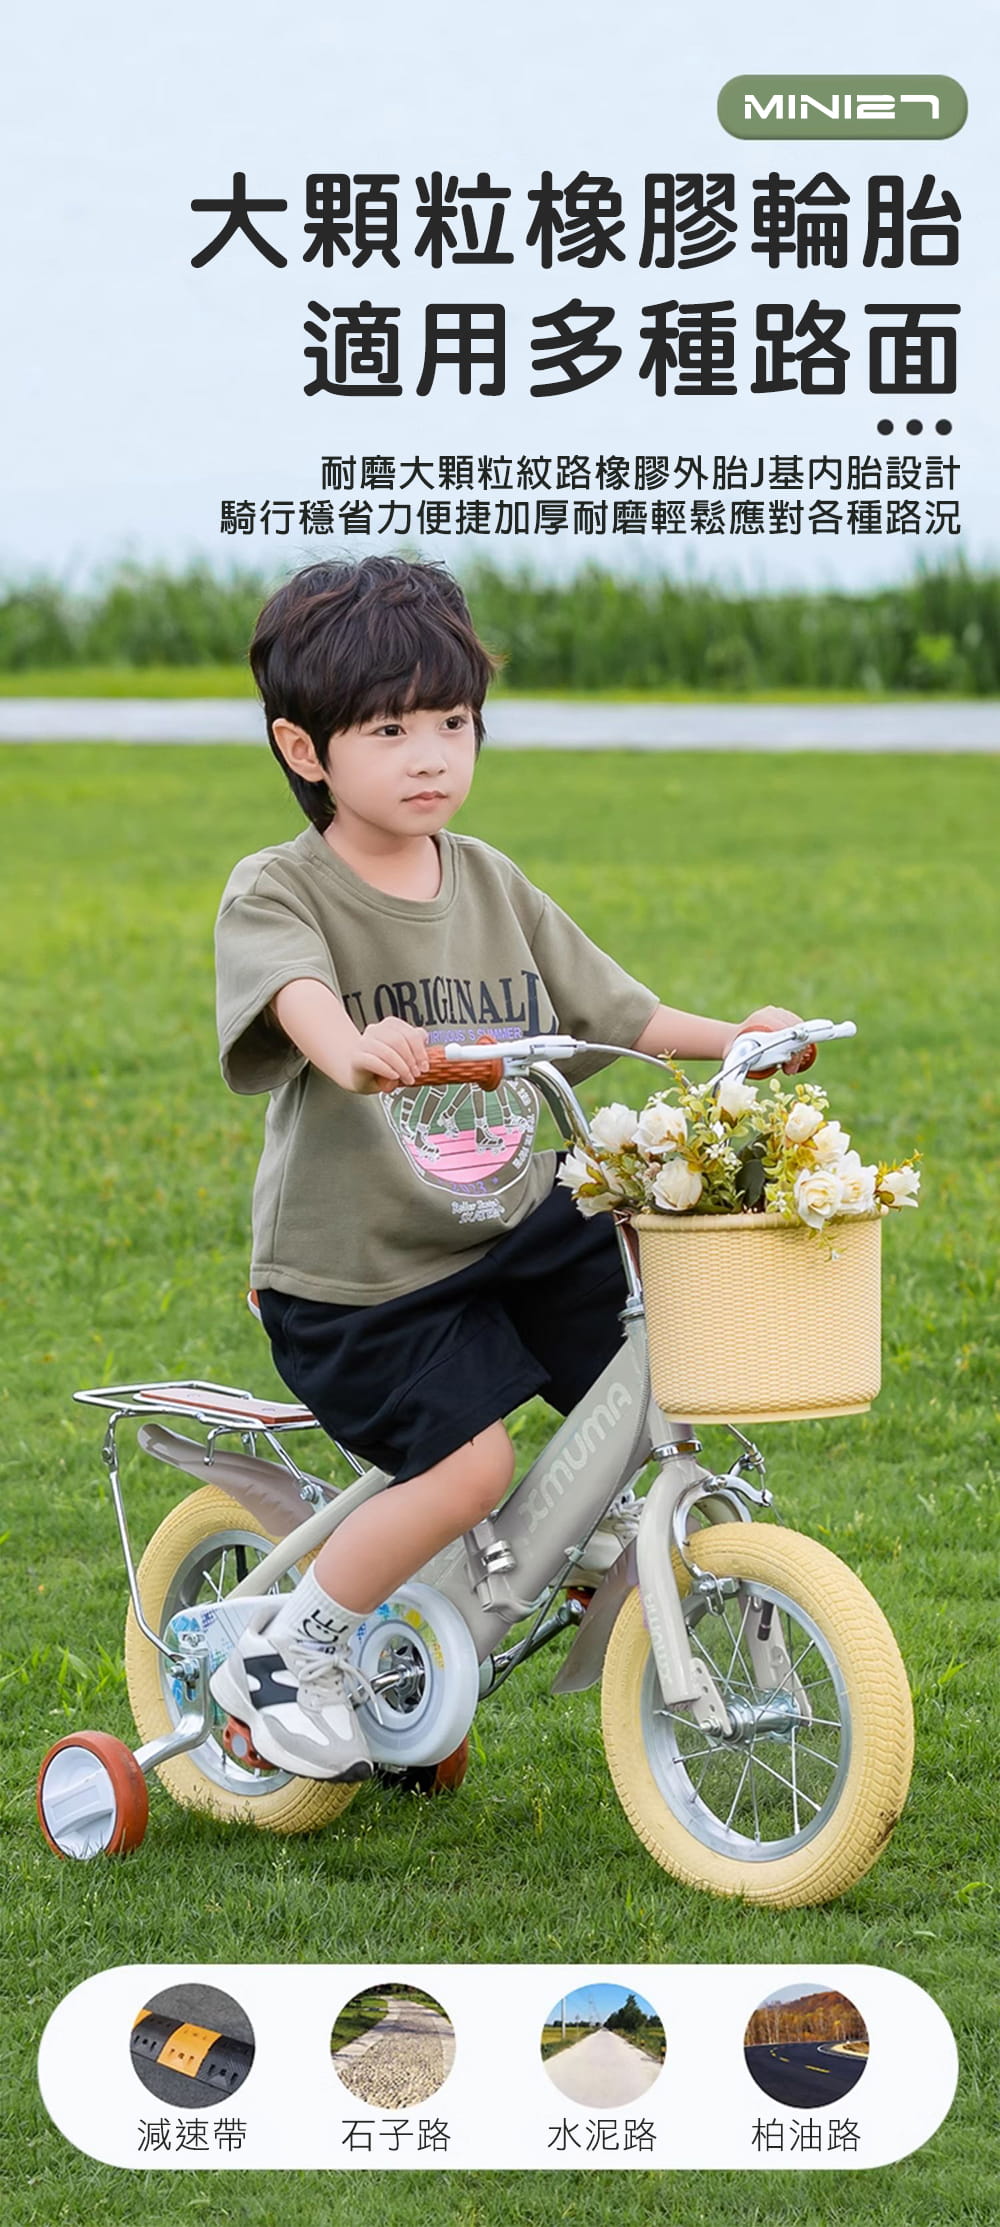 BIKEONE MINI27 兒童折疊自行車14吋男女寶寶小孩摺疊腳踏單車後貨架版款顏色可愛清新 5